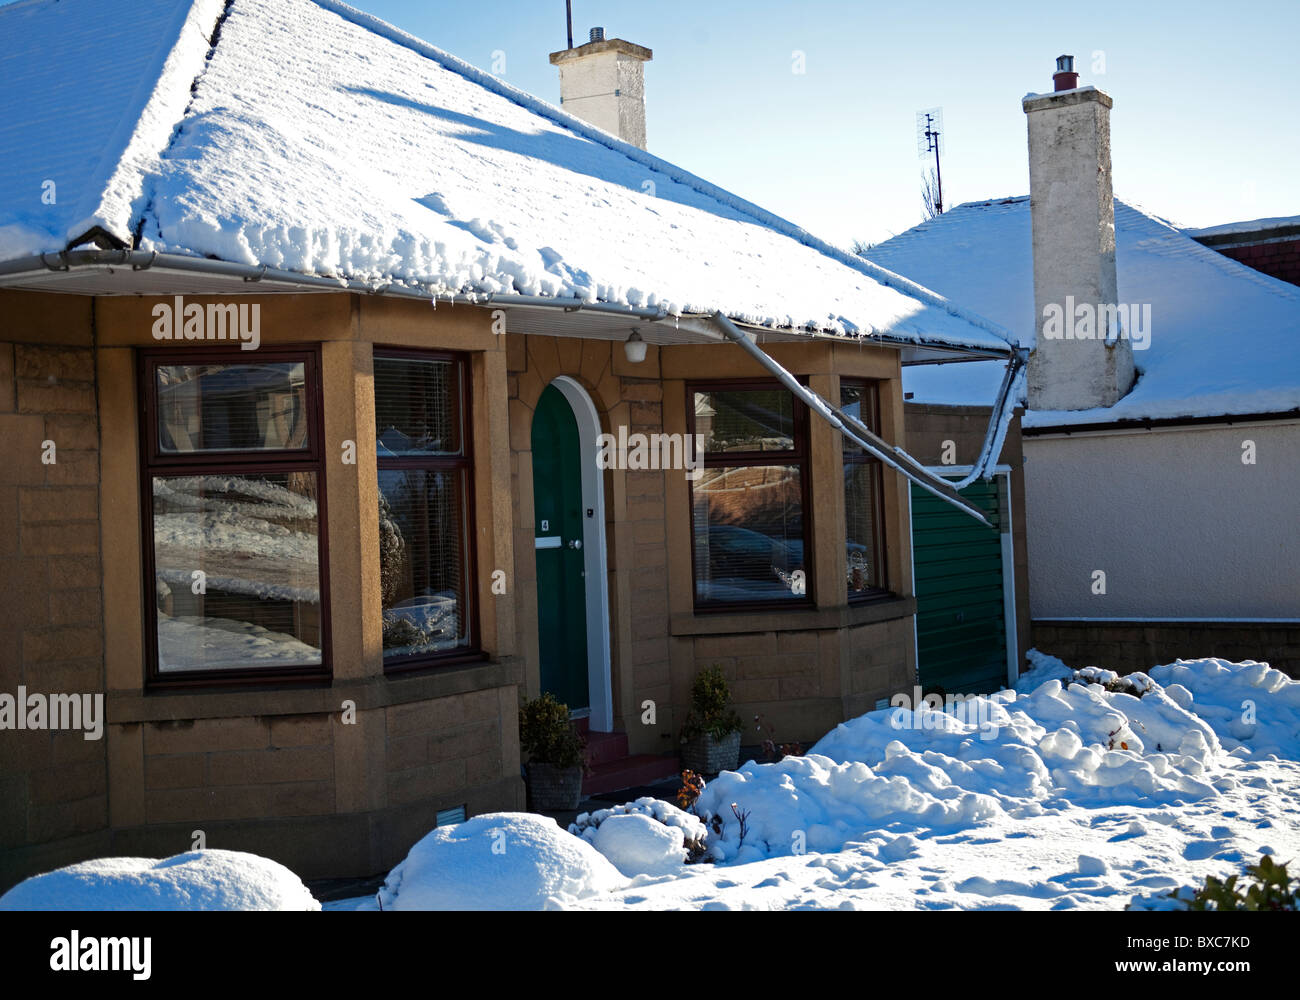 Winter Schnee beschädigt, eingestürzten Dach, Dachrinnen, aufgrund der eisigen Wetterbedingungen Stockfoto